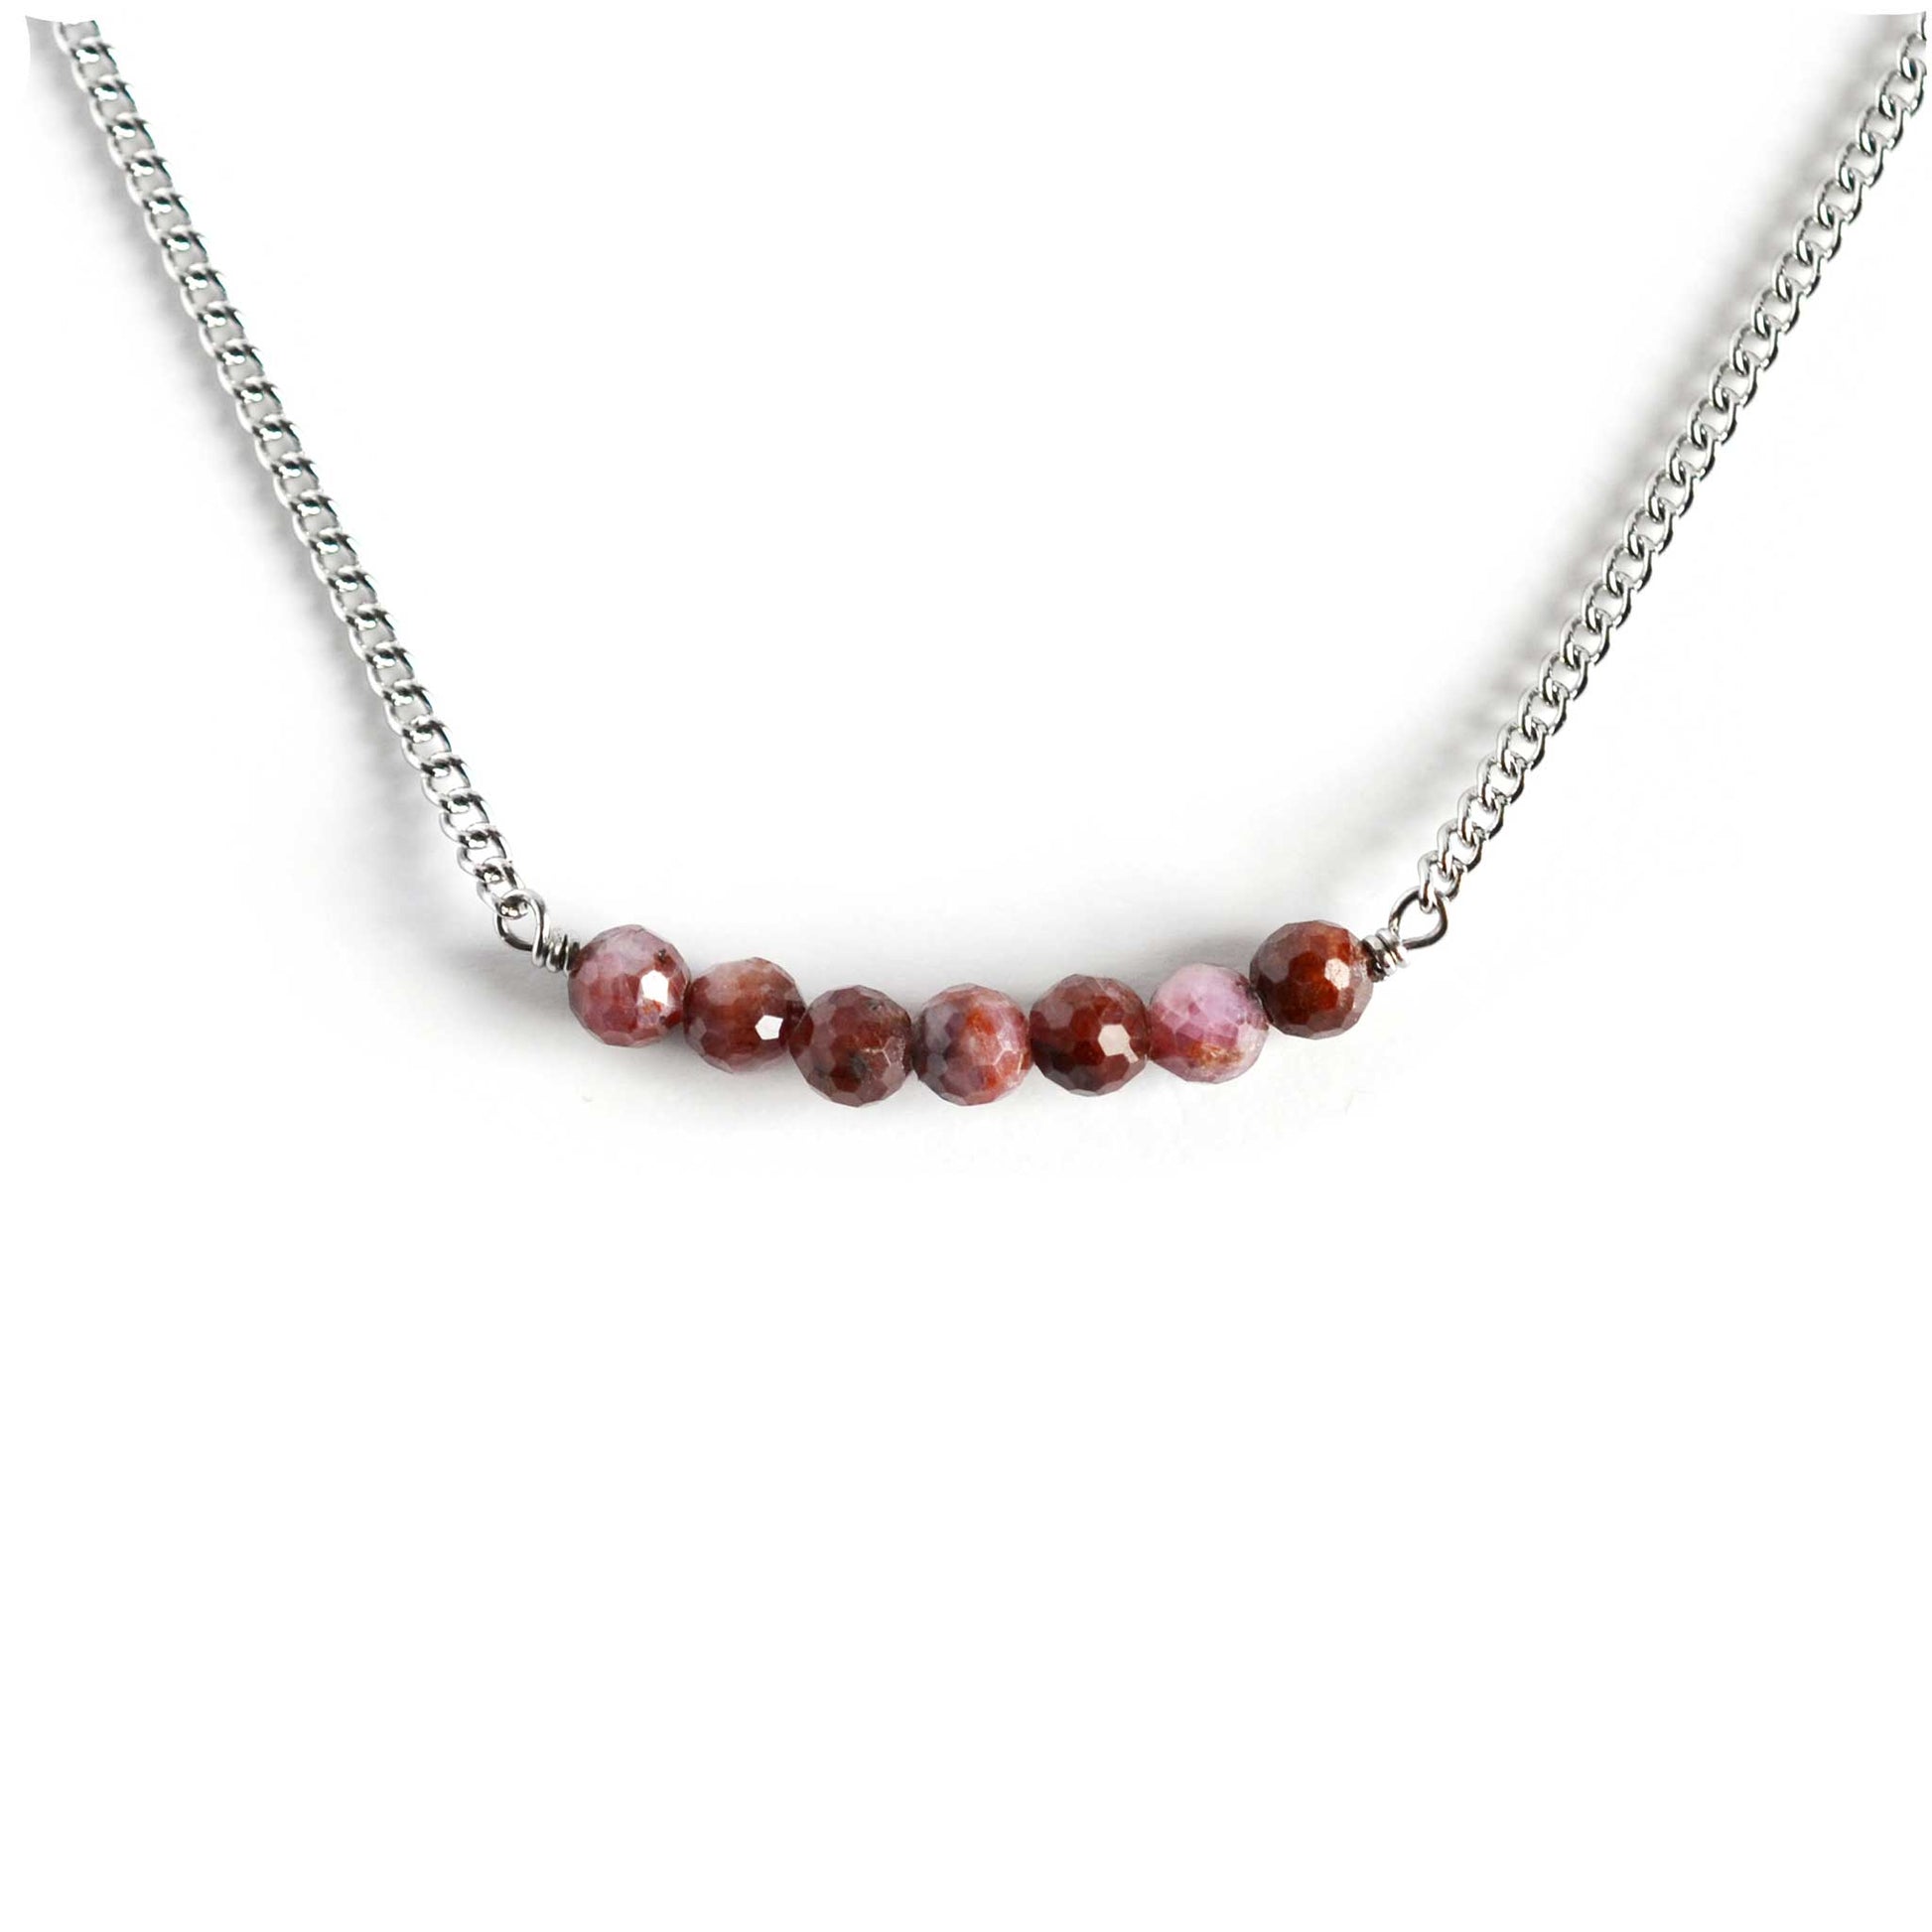 Ruby gemstone bar necklace on white background